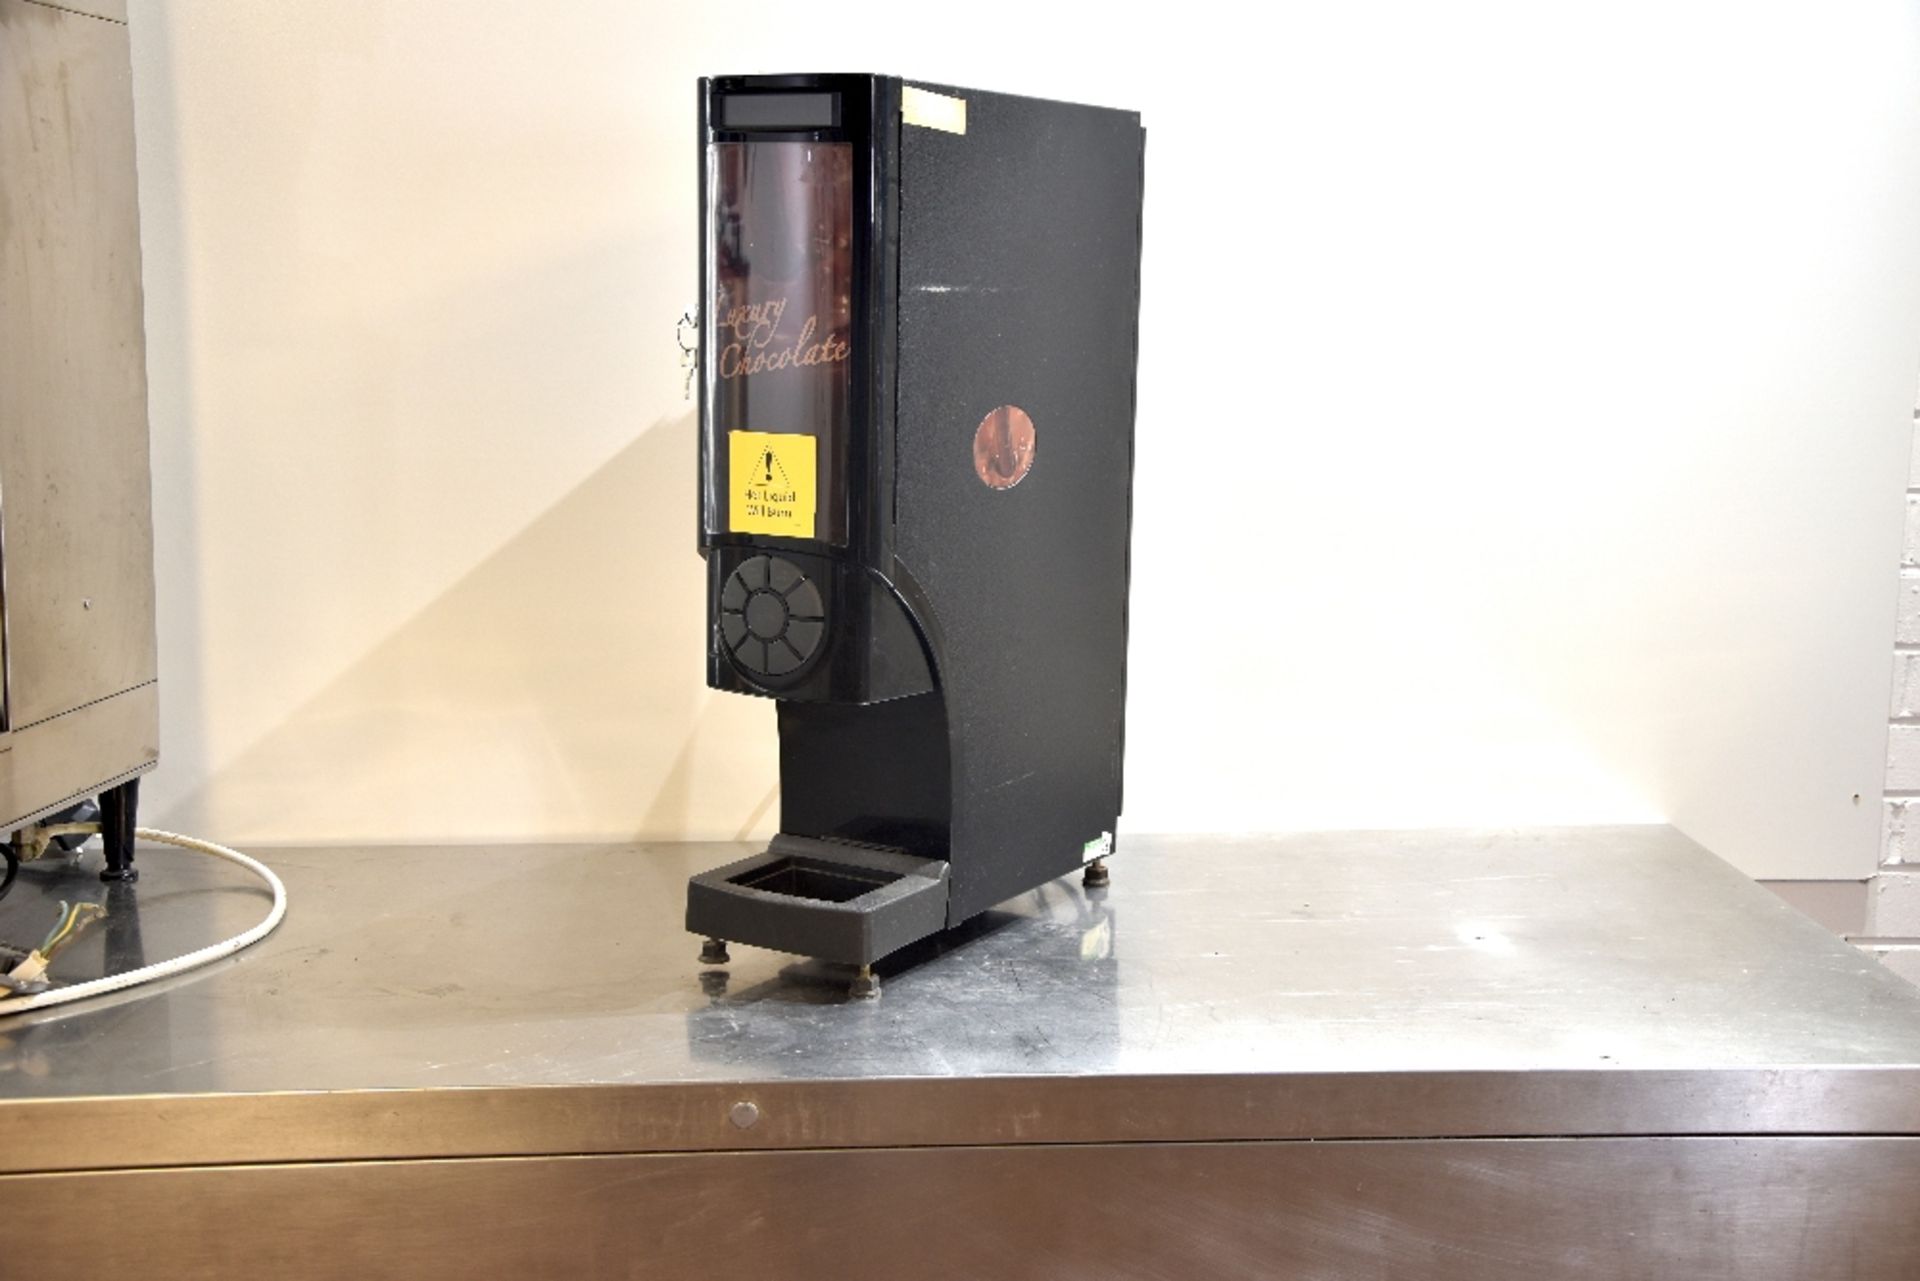 Hot Chocolate Machine -1ph – Tested Working